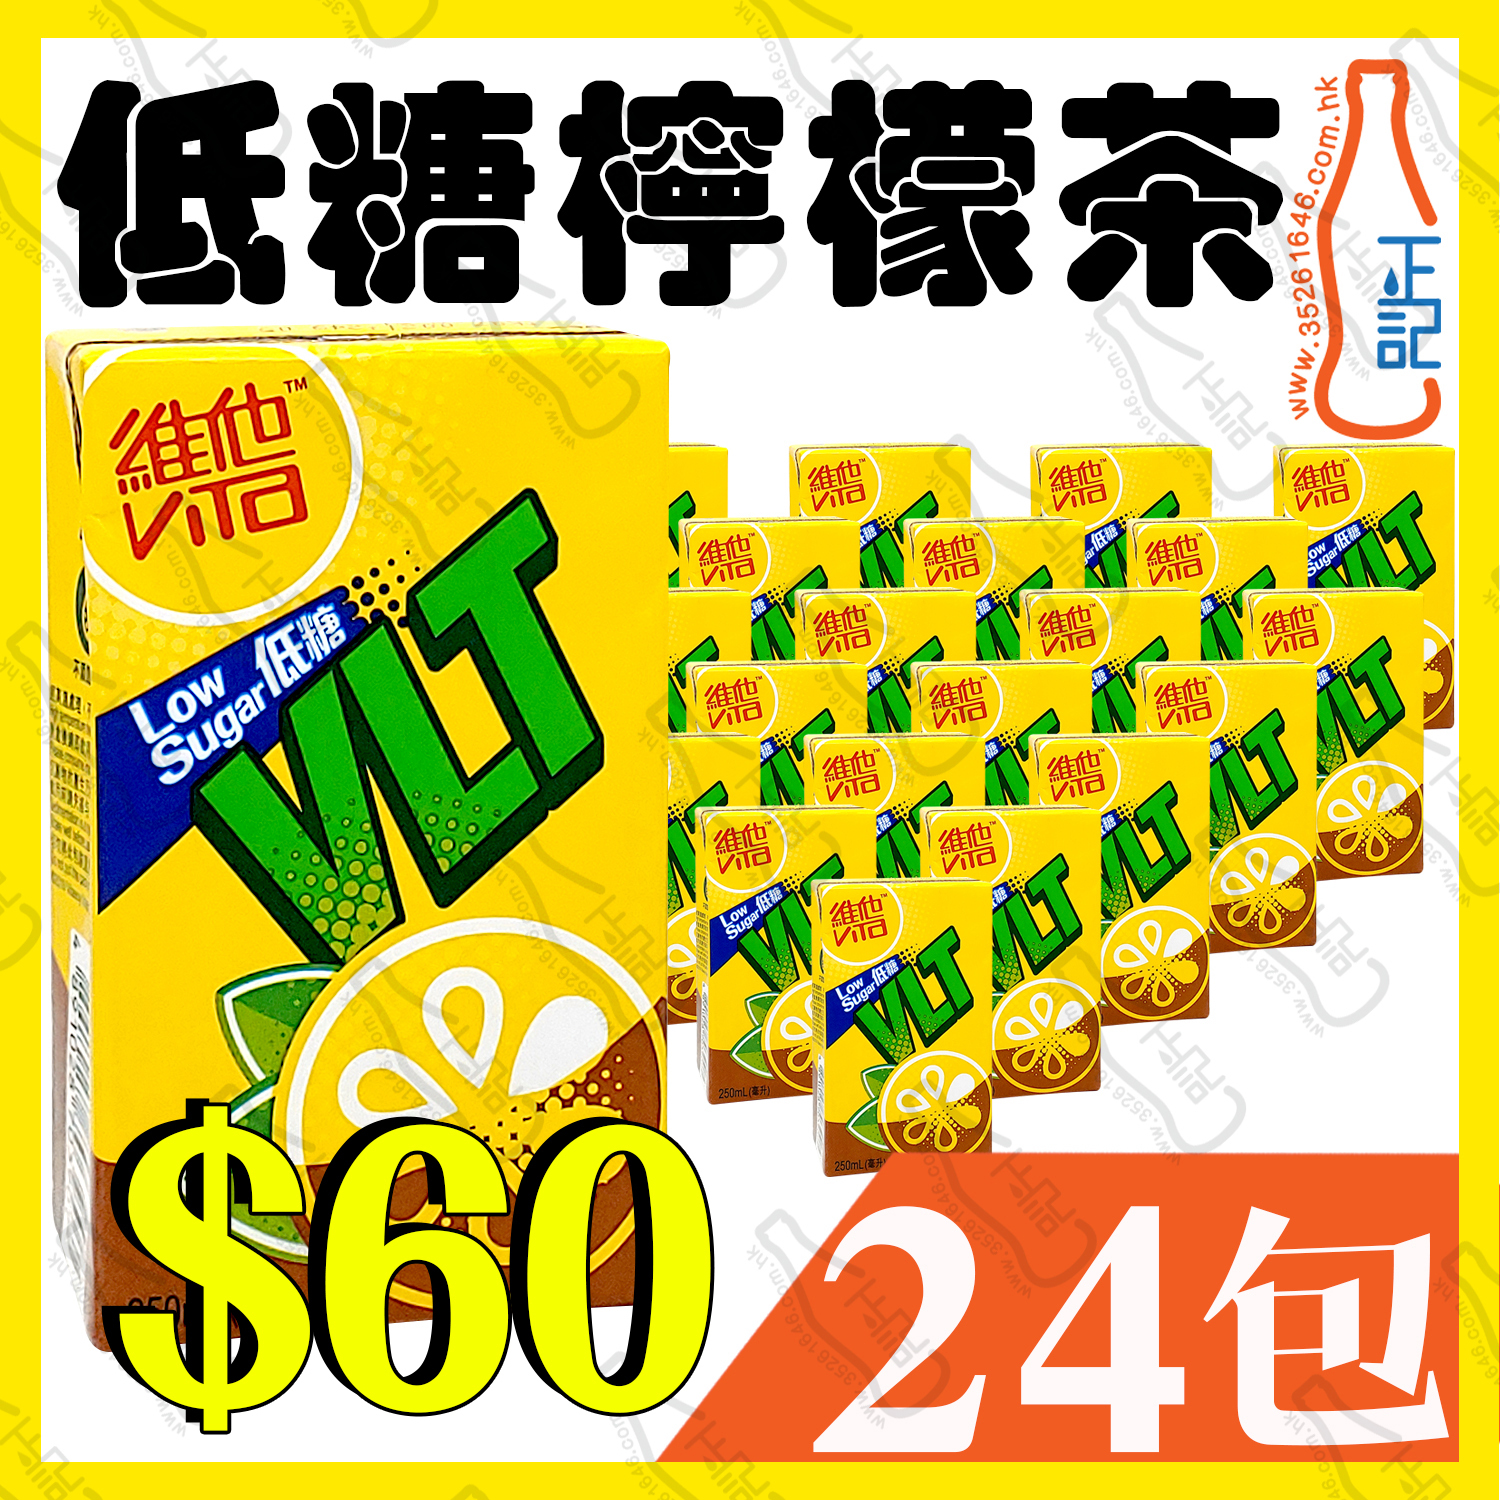 低糖)維他檸檬茶250ml x 24包